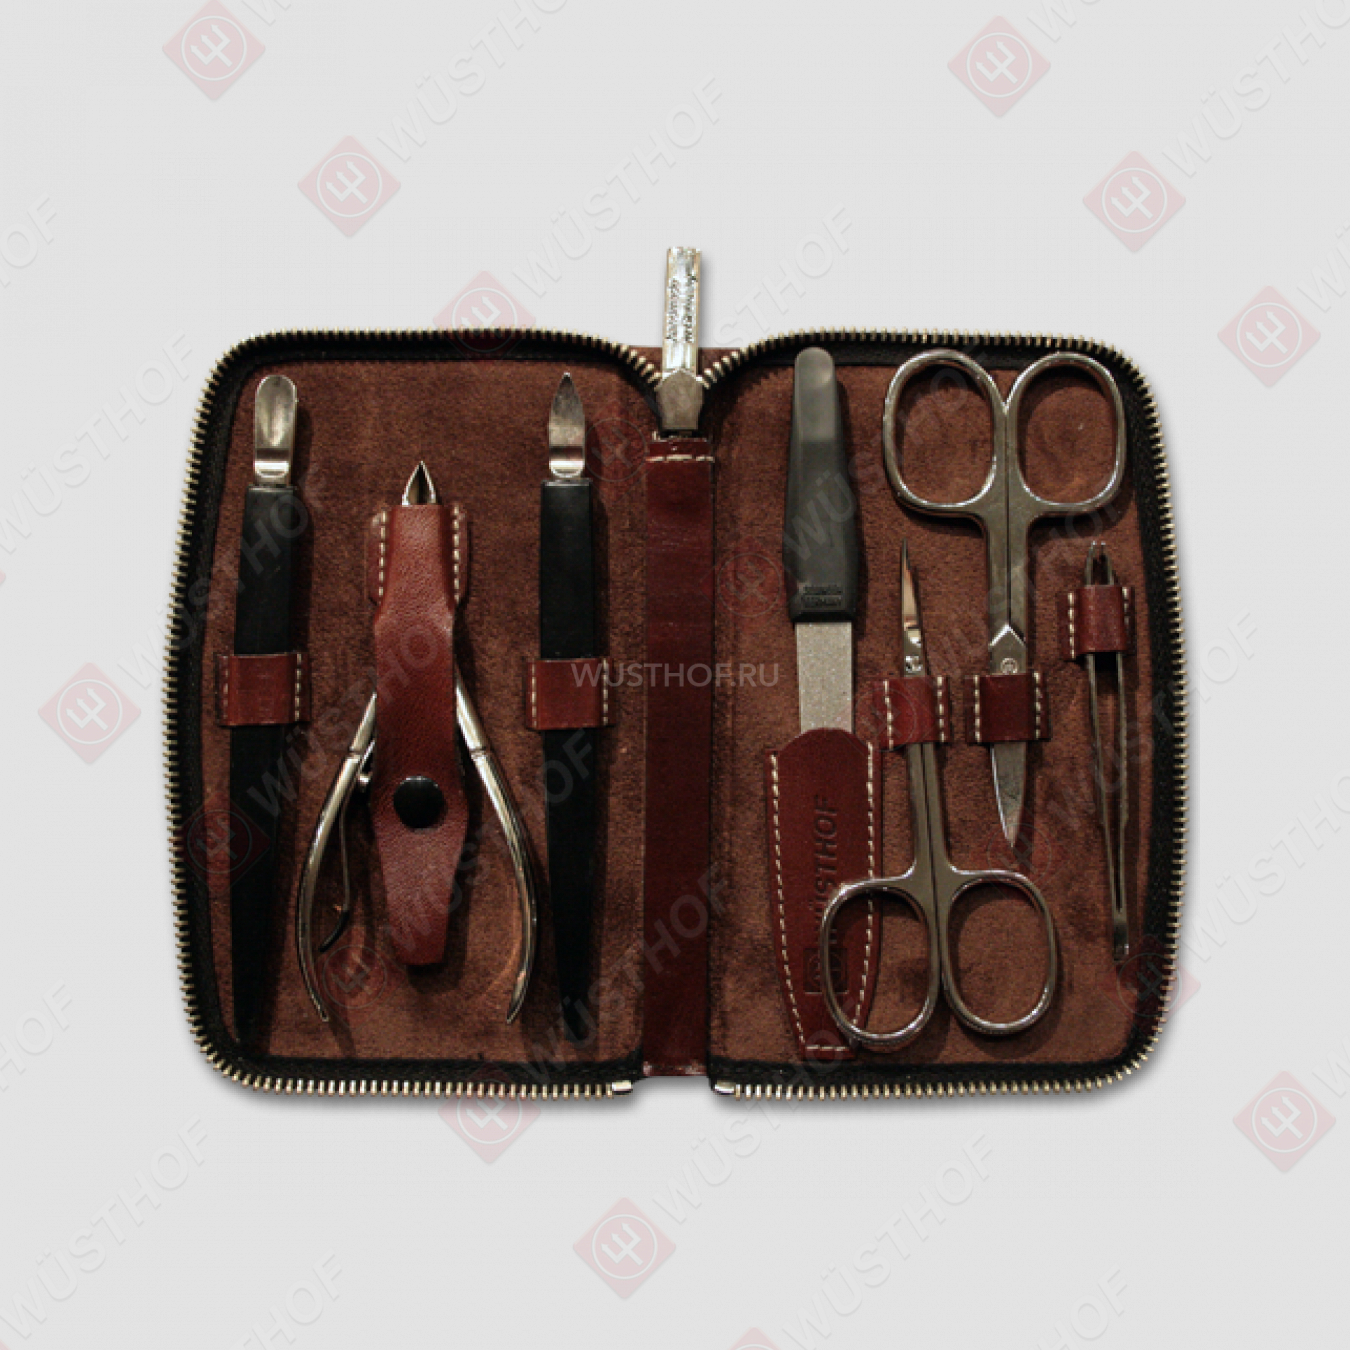 Набор маникюрный 7 предметов в кожаном футляре, цвет коричневый, никелированное покрытие, серия Manicure sets, WUESTHOF, Золинген, Германия